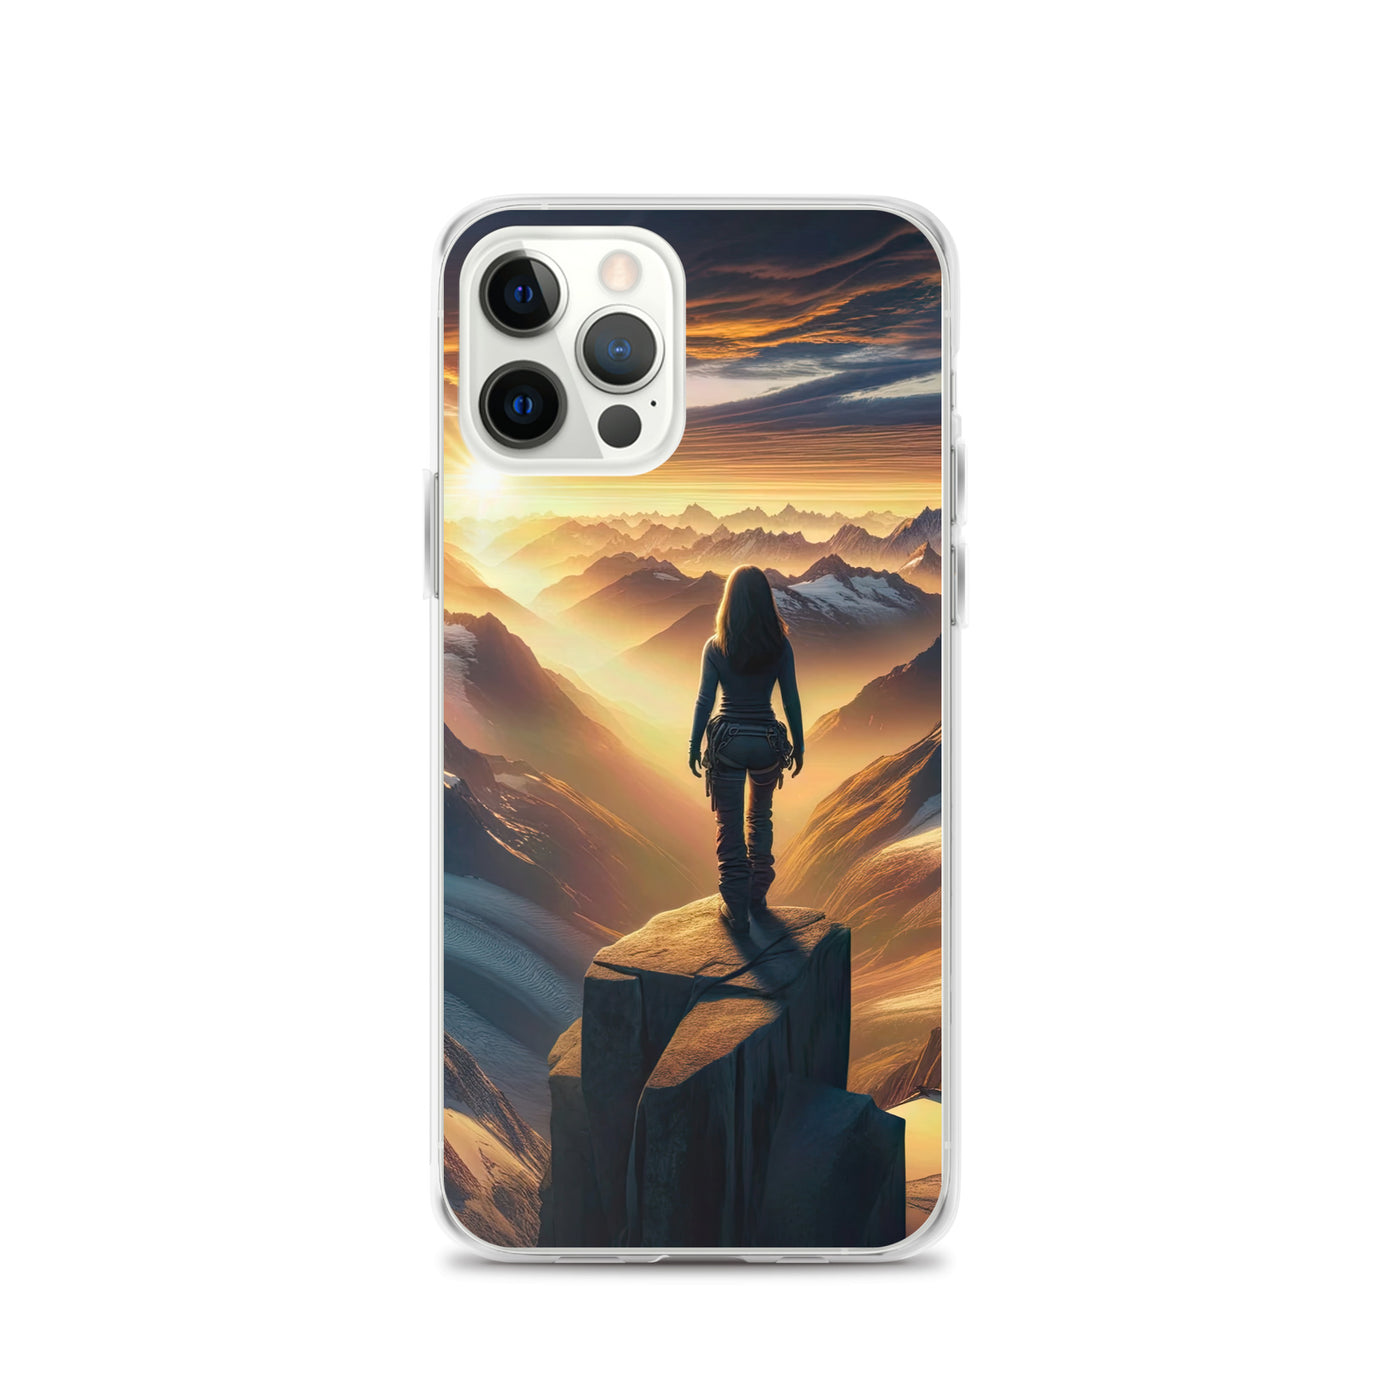 Fotorealistische Darstellung der Alpen bei Sonnenaufgang, Wanderin unter einem gold-purpurnen Himmel - iPhone Schutzhülle (durchsichtig) wandern xxx yyy zzz iPhone 12 Pro